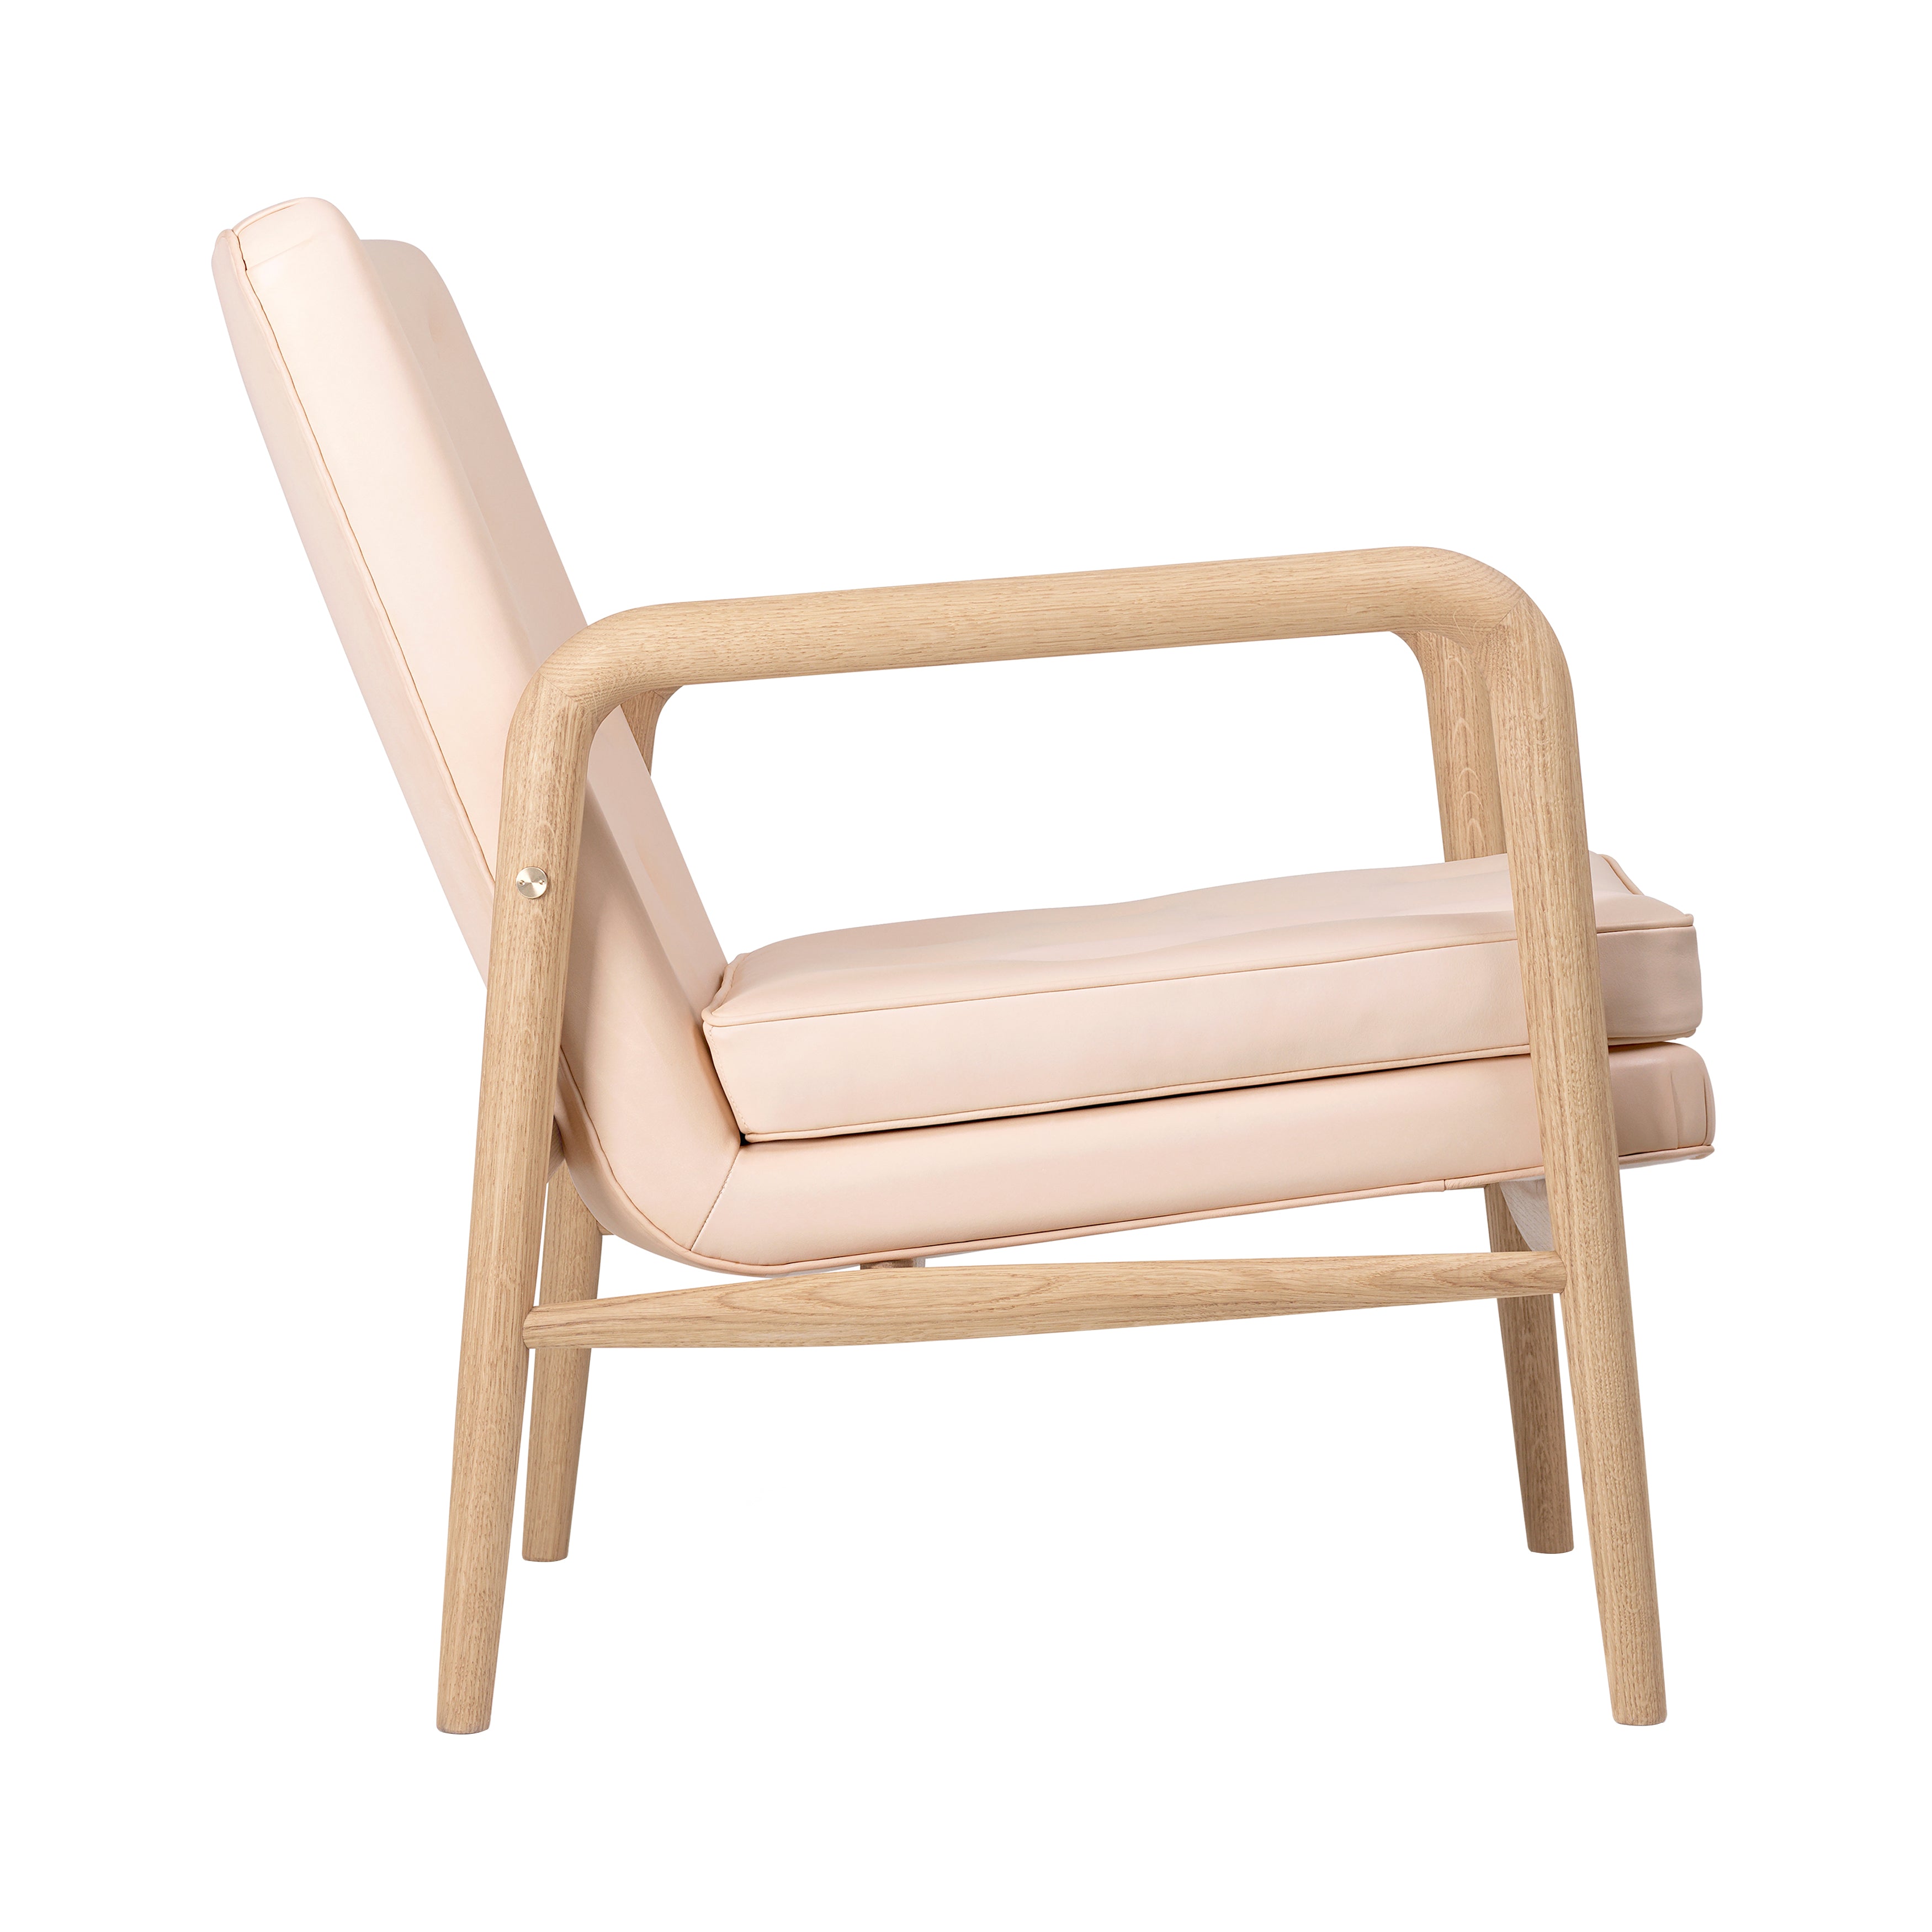 VLA76 Foyer Chair: Oiled Oak